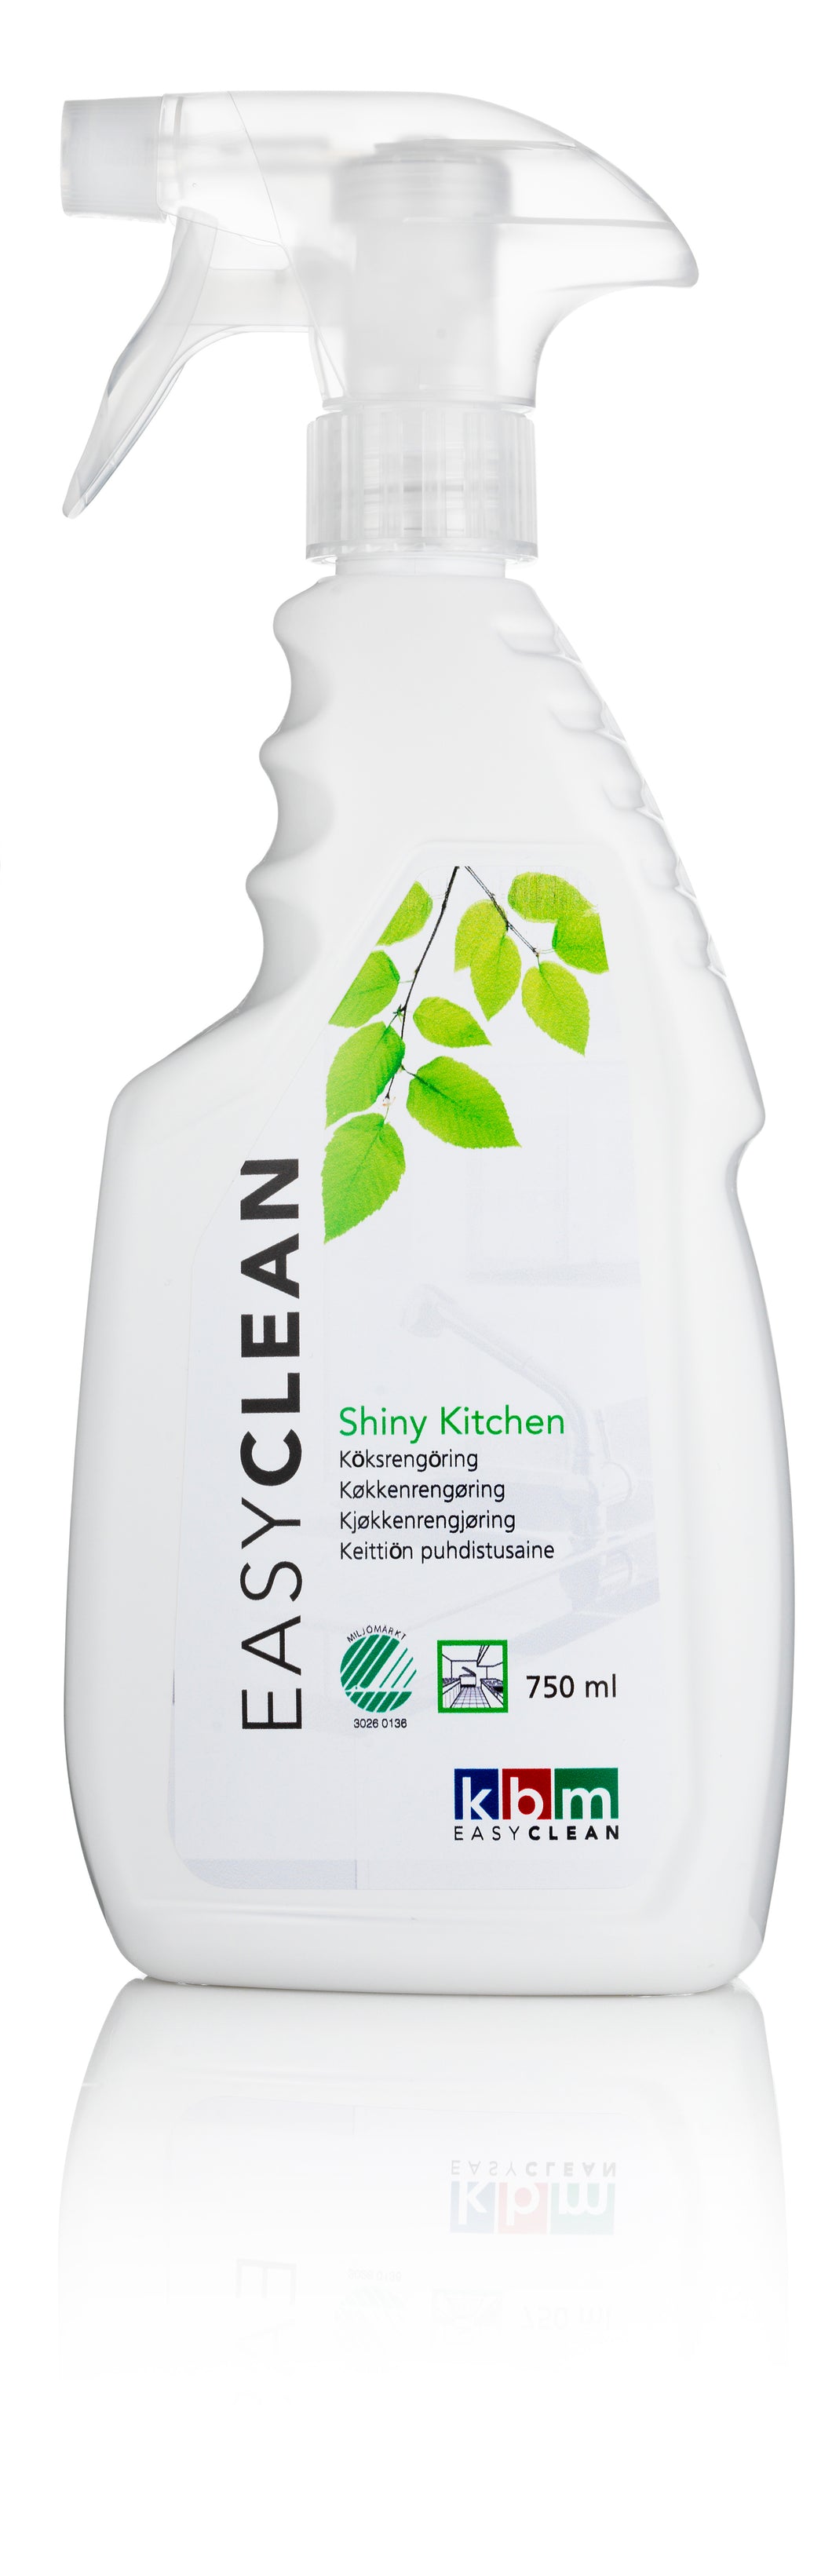 Kök Spray, Easy Clean Kitchen, 750 ml